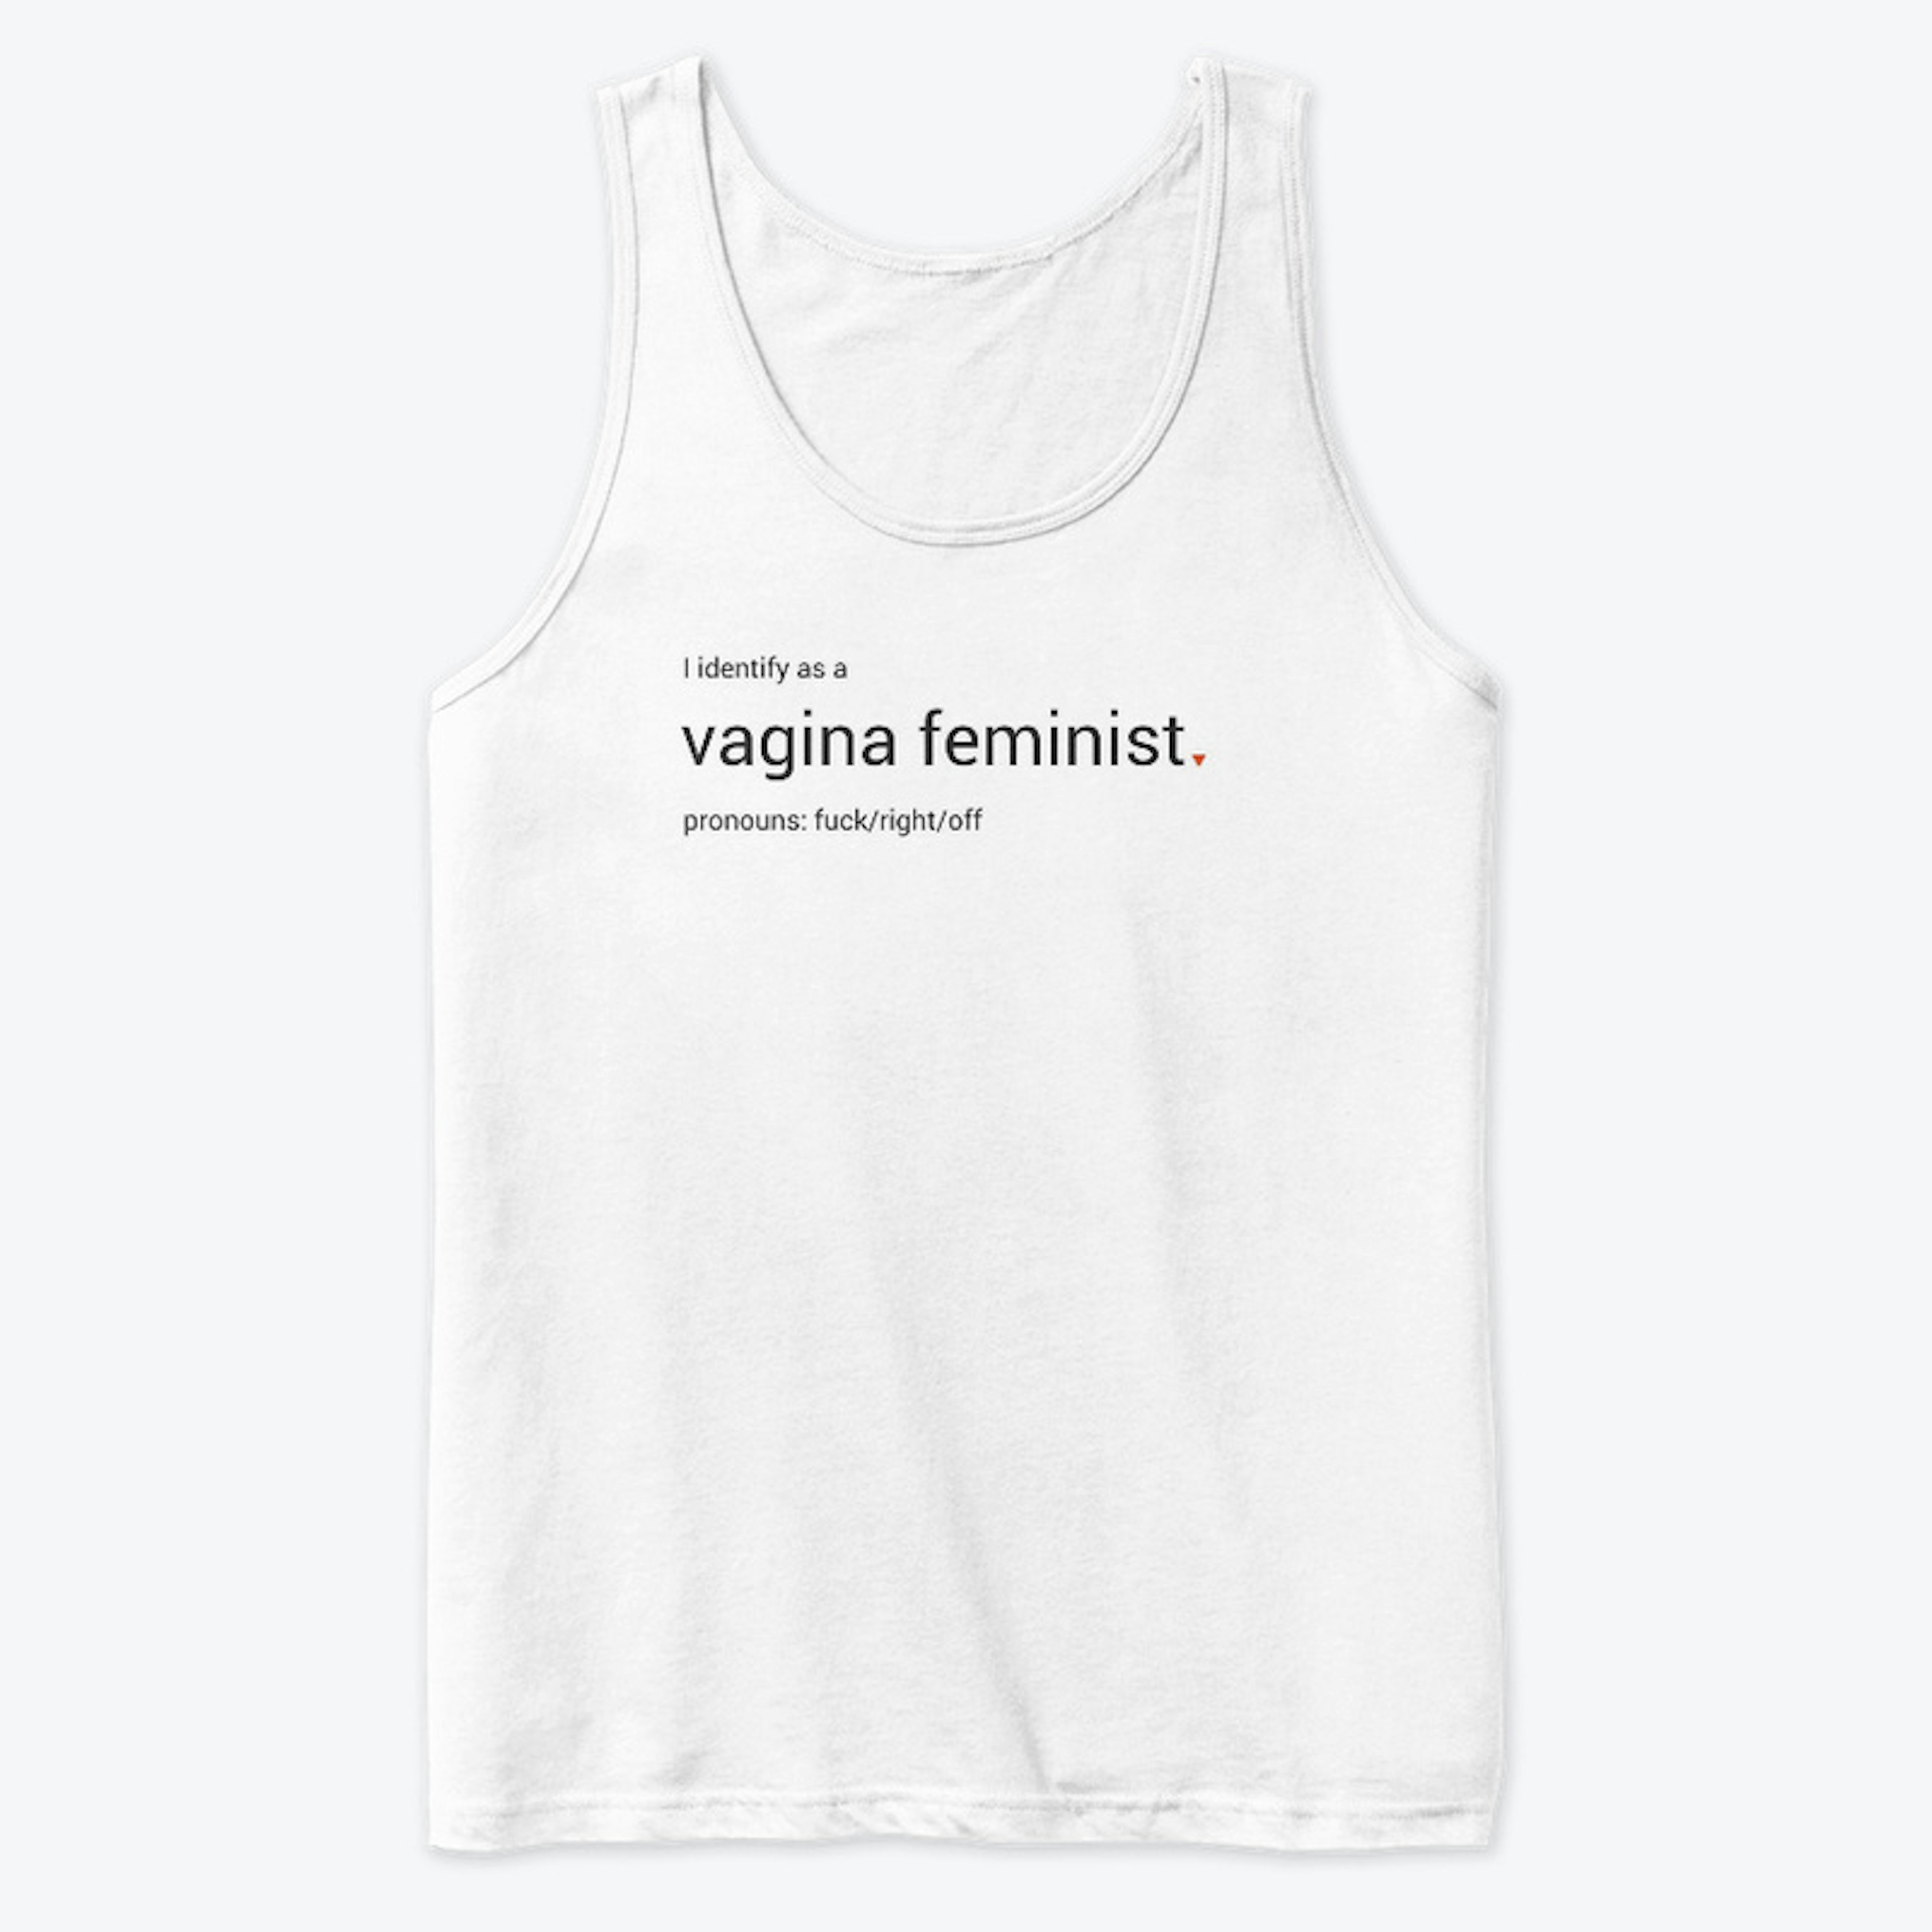 I Identify as a Vagina Feminist tank